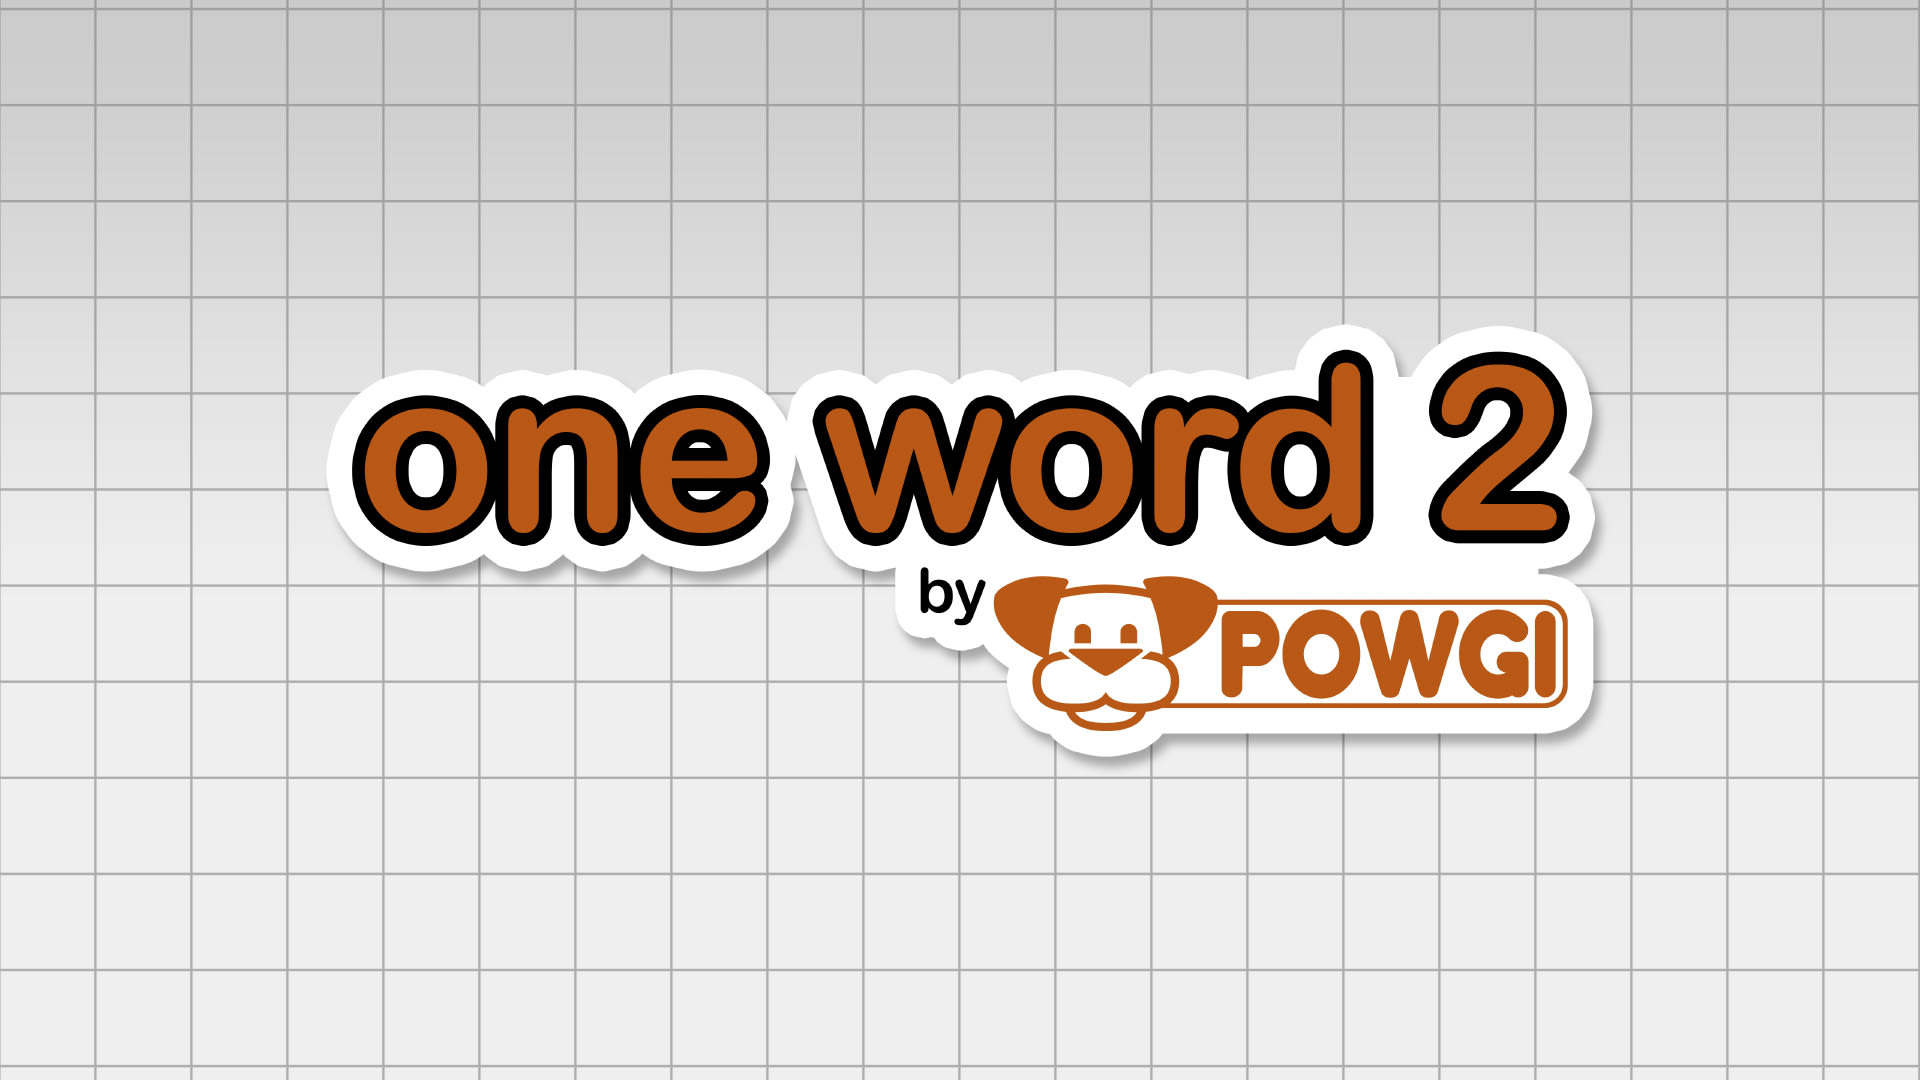 One Word 2 by POWGI